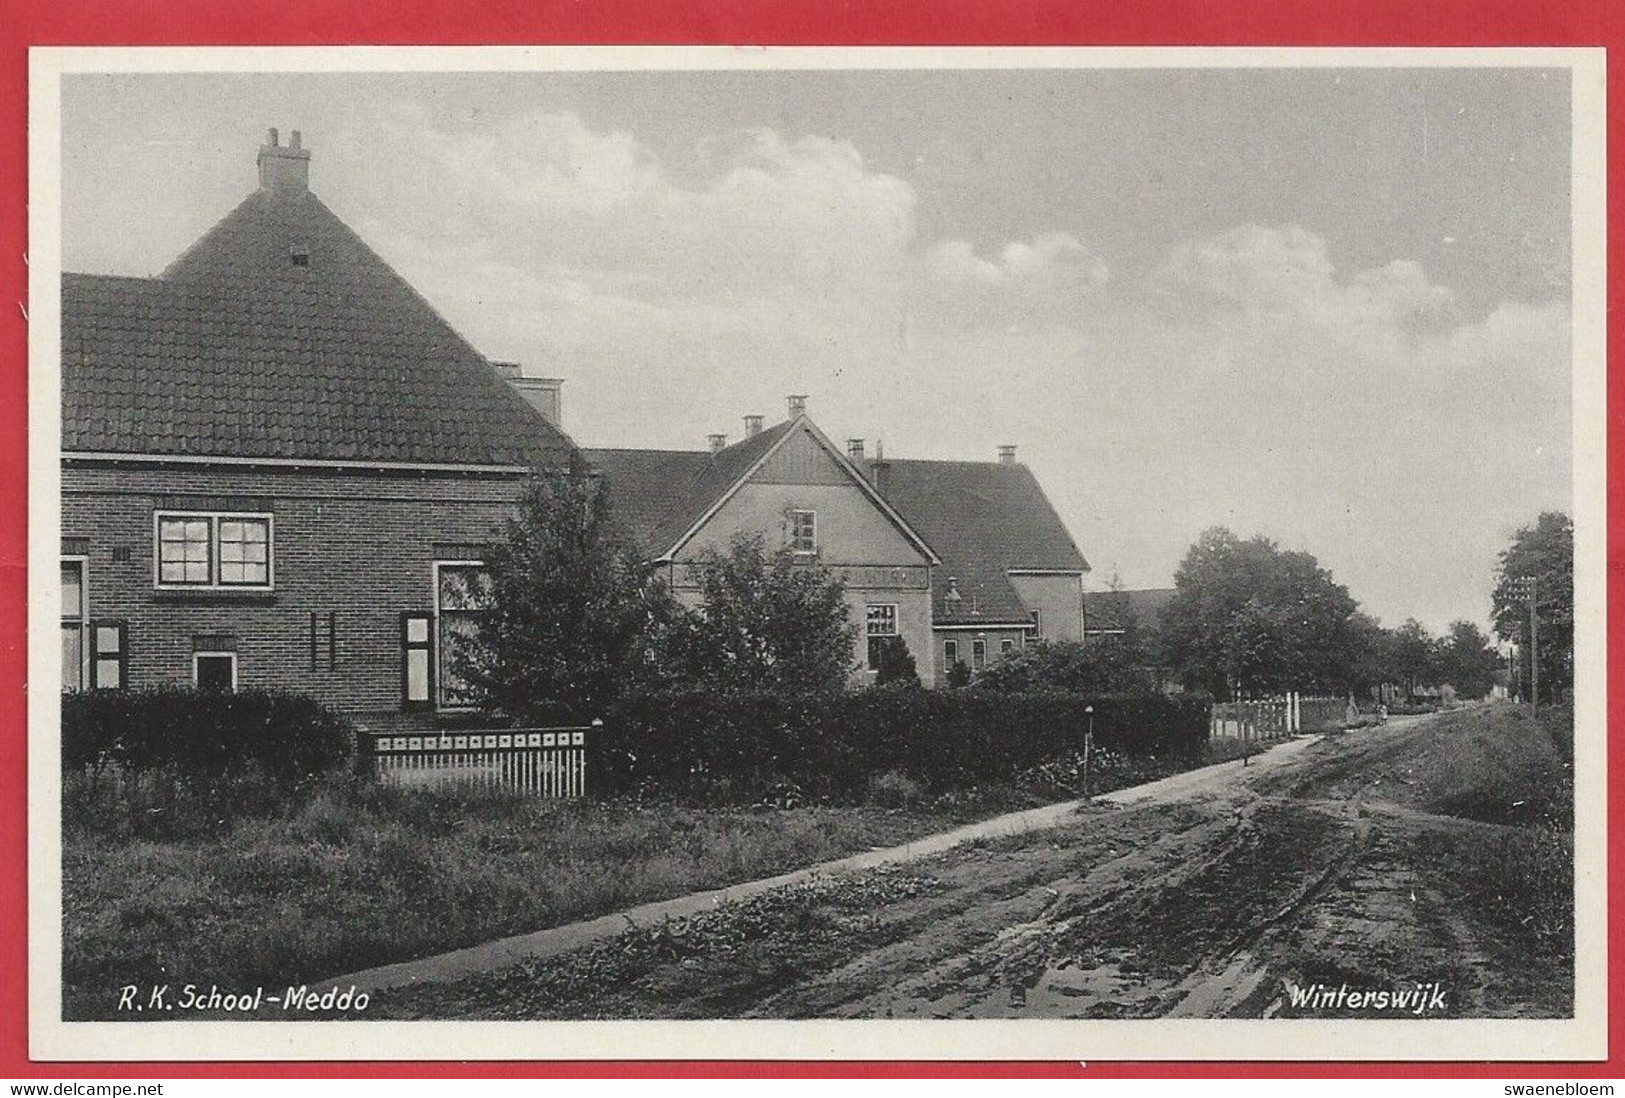 NL.- Winterswijk, Rooms Katholieke School, Meddo. R.K. School. Uitgave Boekhandel G.J. Albrecht. .Foto J.H. Te Hofstee - Winterswijk